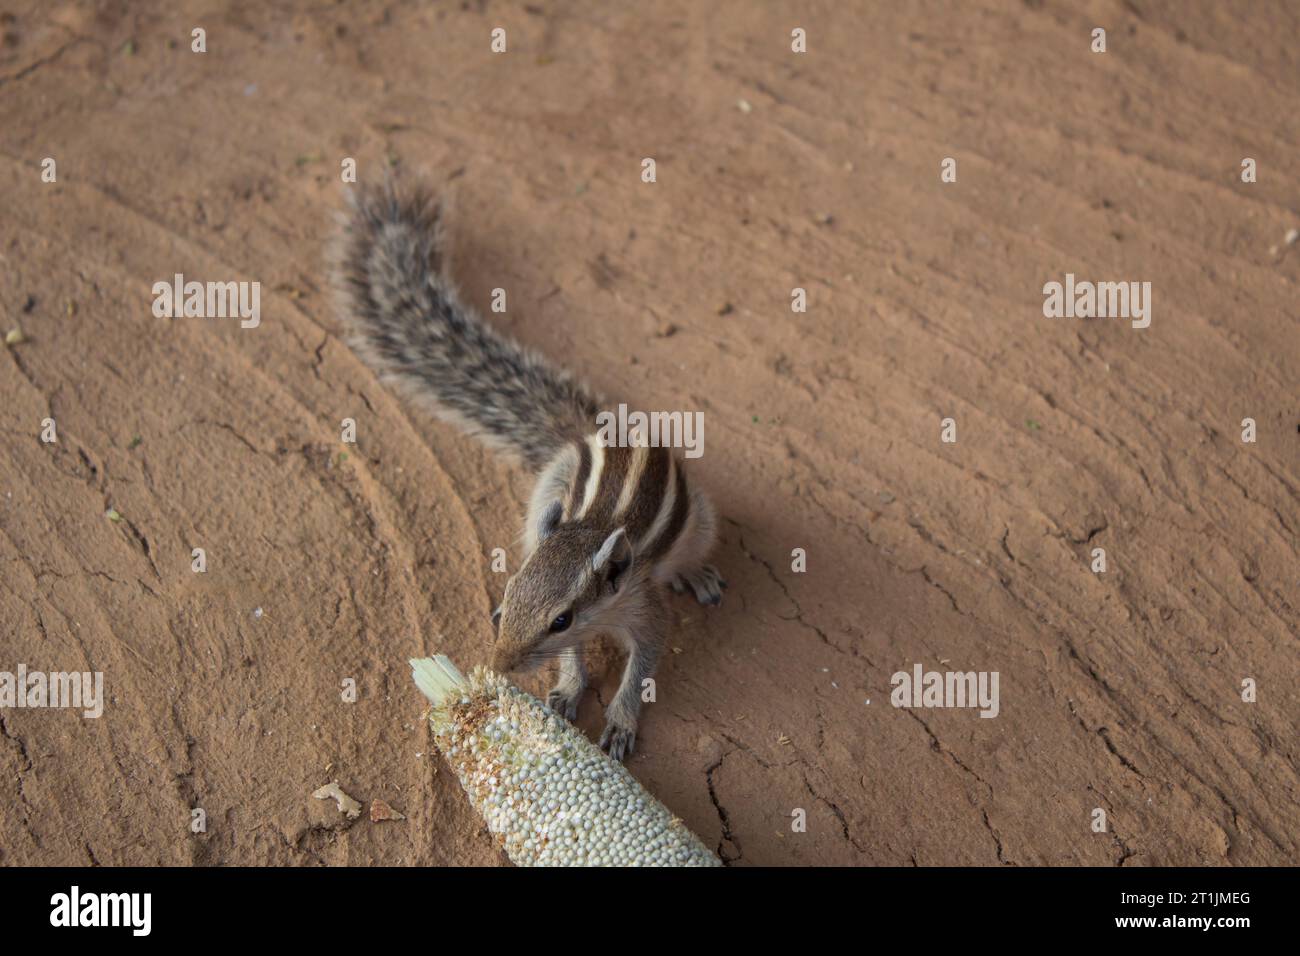 Écureuil mangeant du millet d'une oreille de millet couchée sur le sol Banque D'Images